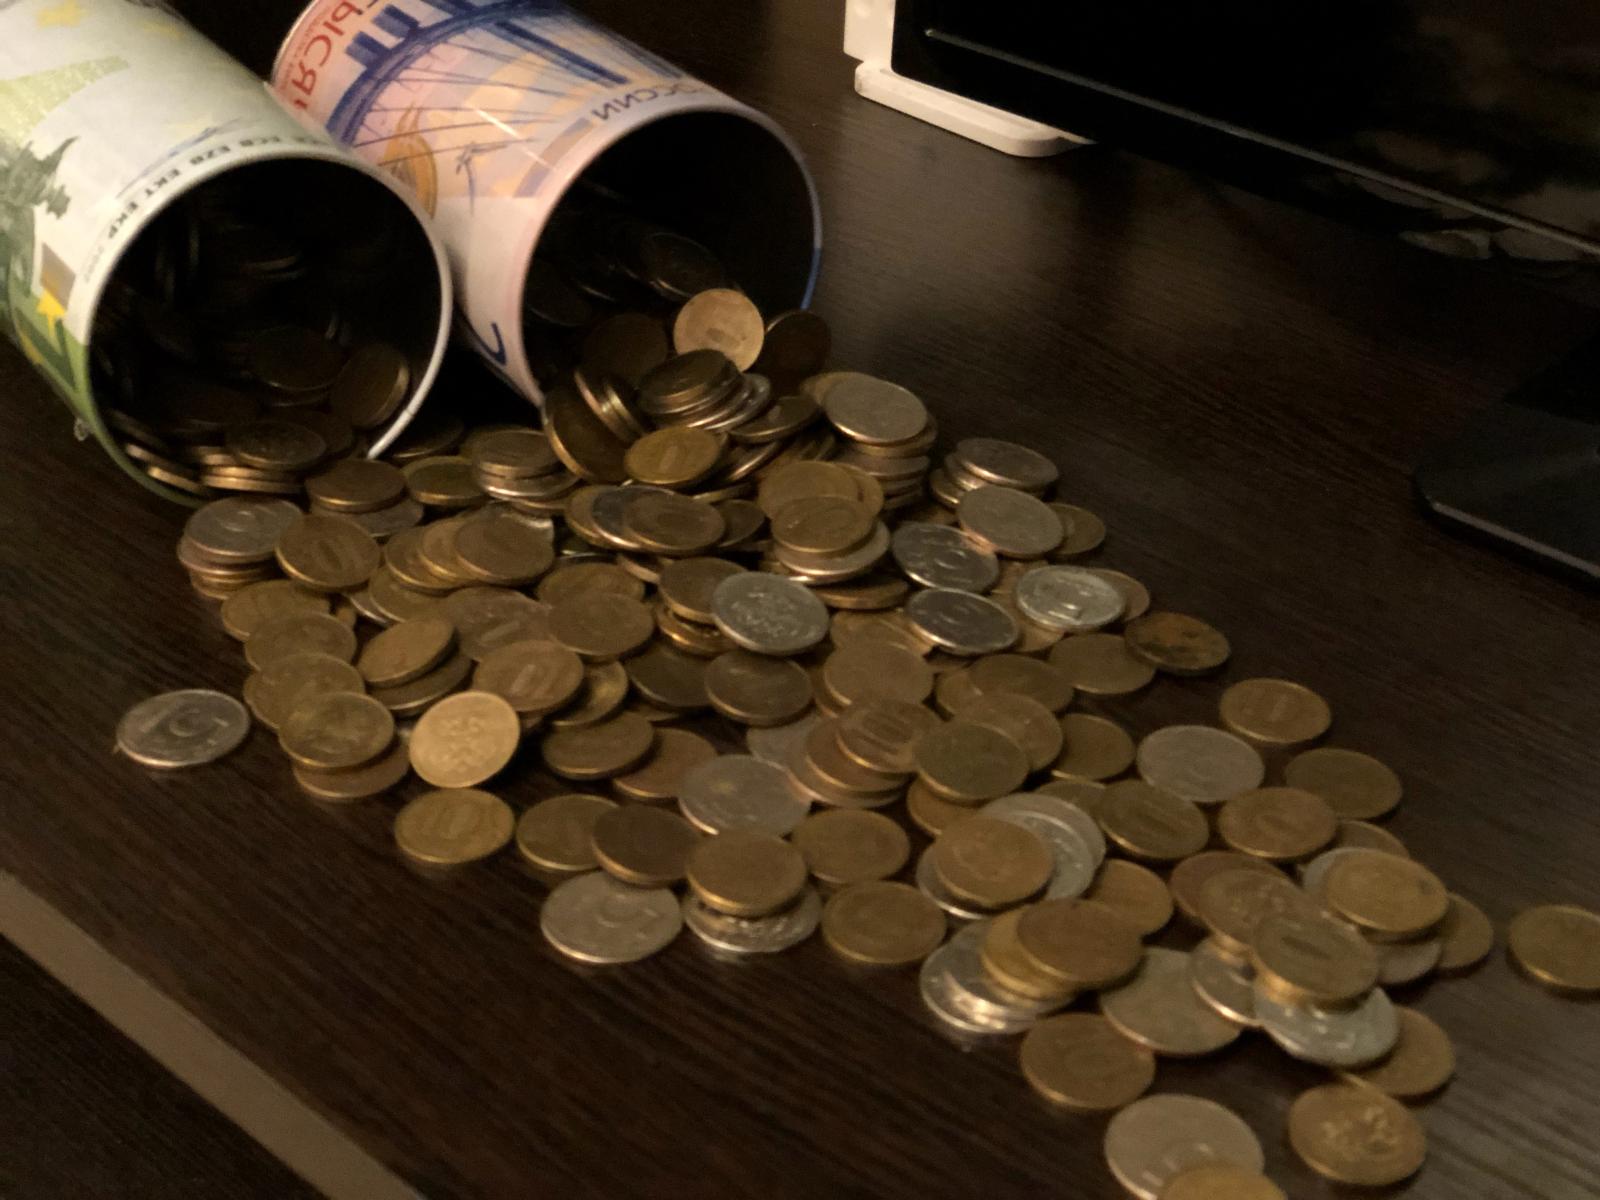 Продавец немаркированных сигарет в Клинцах получил 4 года колонии за 105 тысяч рублей взятки полицейскому